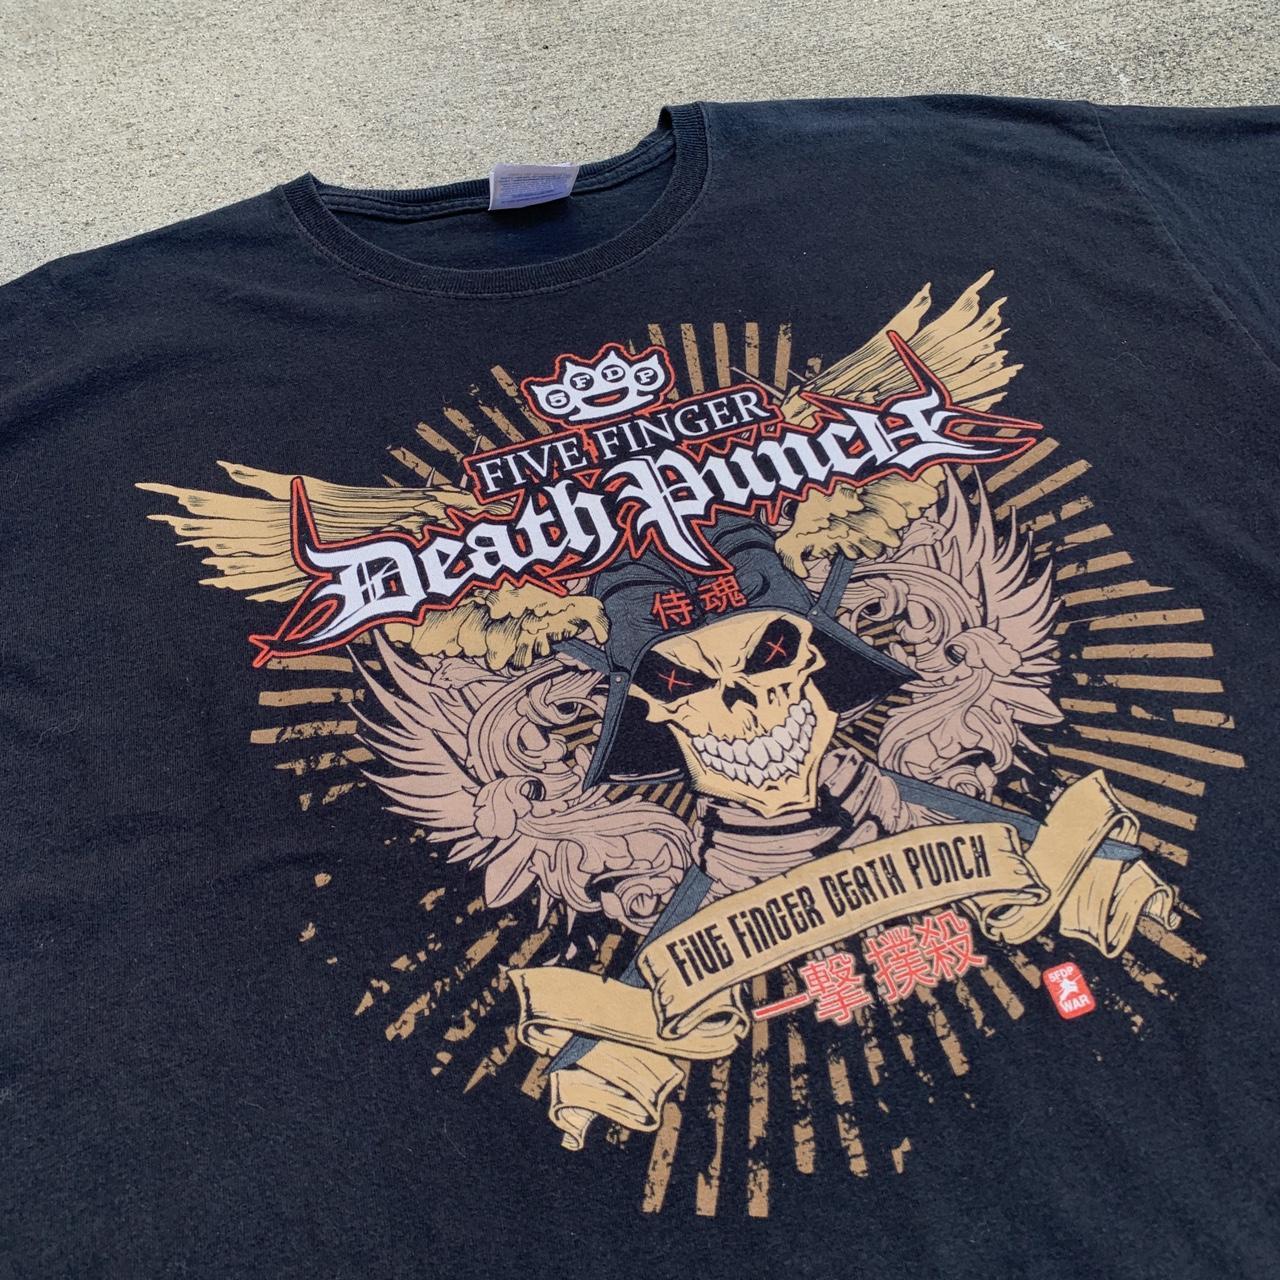 Five Finger Death Punch Band T-shirt - Vintage from... - Depop